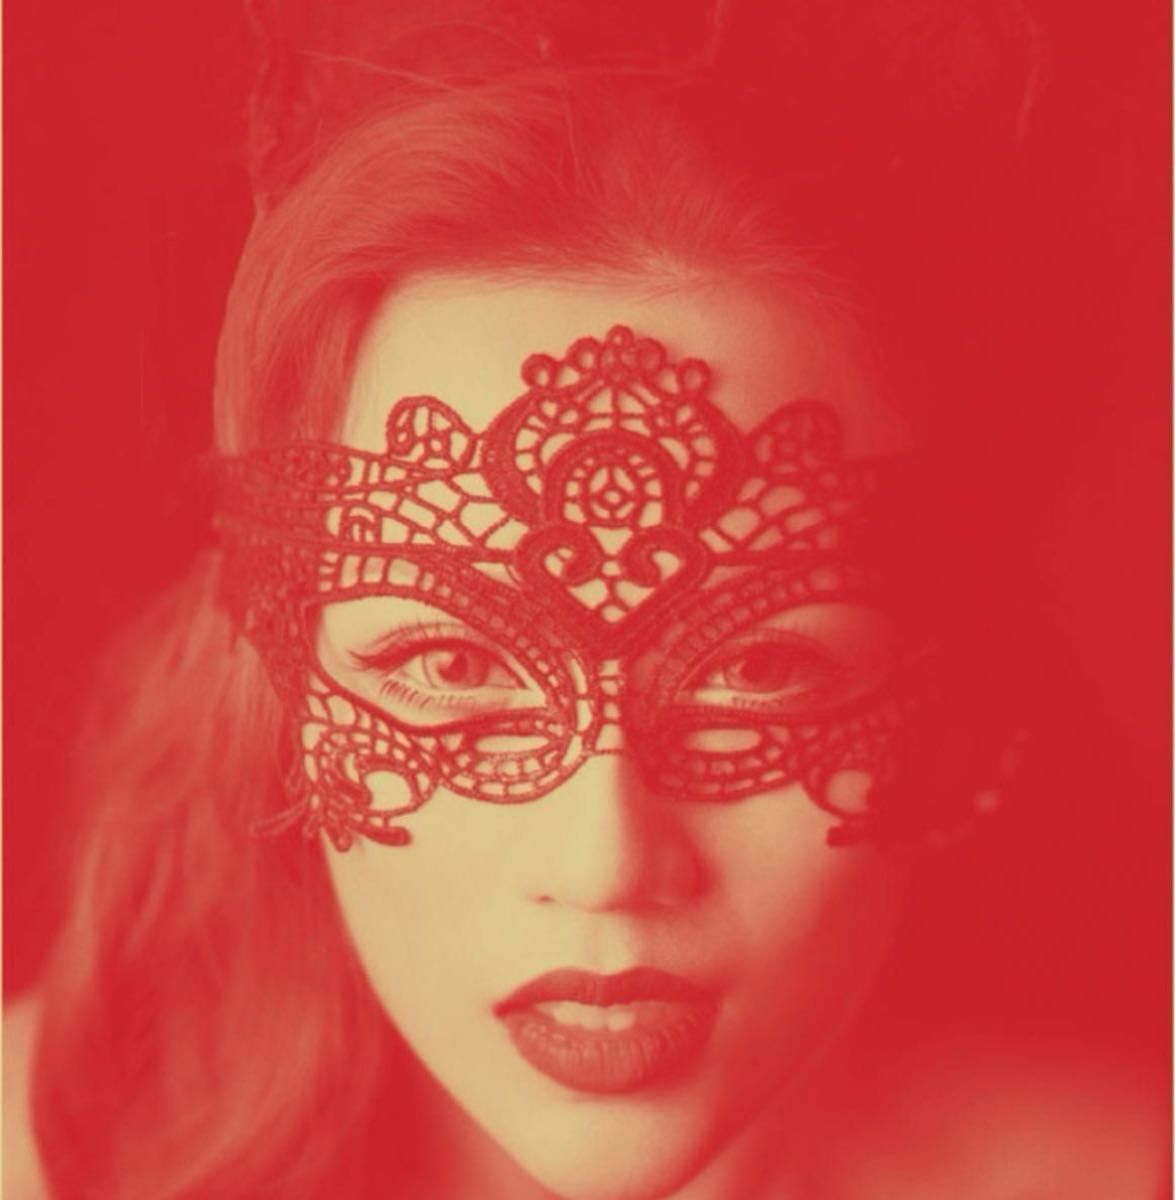 コスプレ 仮面 ベネチアンマスク アイマスク フェイスマスク 女王様 仮装 変装 へんそう パーティー イベント舞踏会 ハロウィン